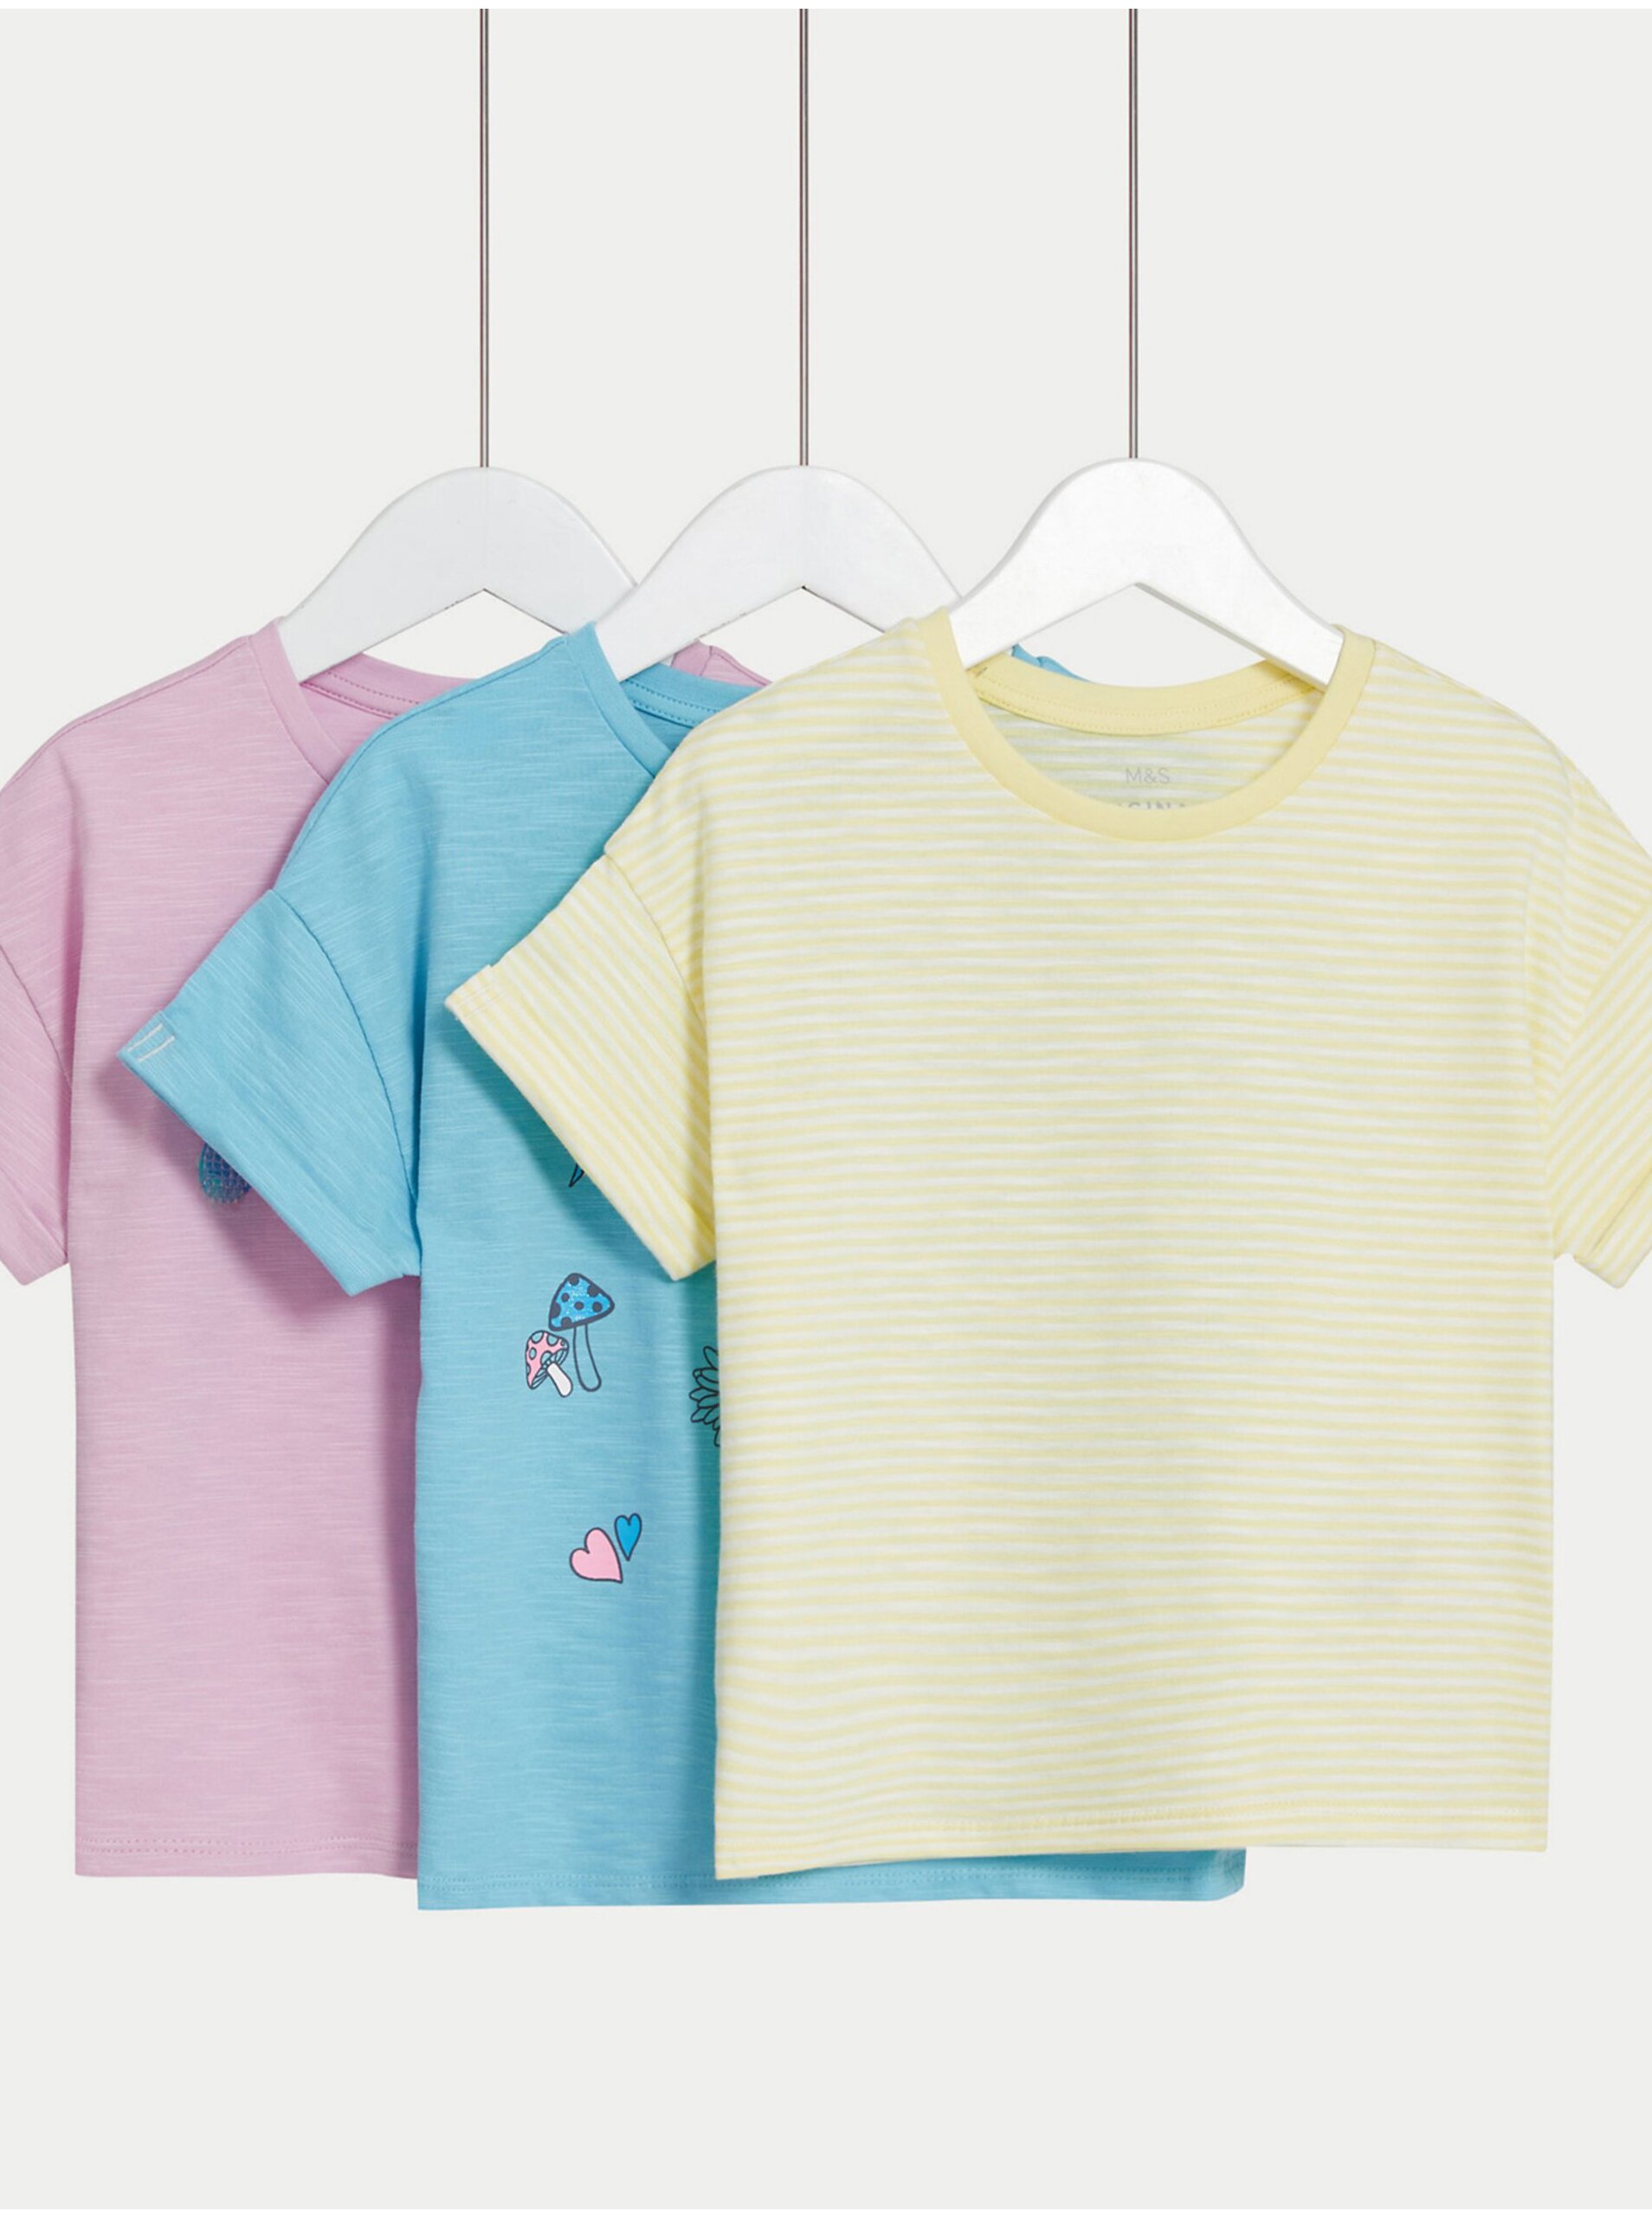 Lacno Súprava troch dievčenských tričiek v ružovej, modrej a žltej farbe Marks & Spencer